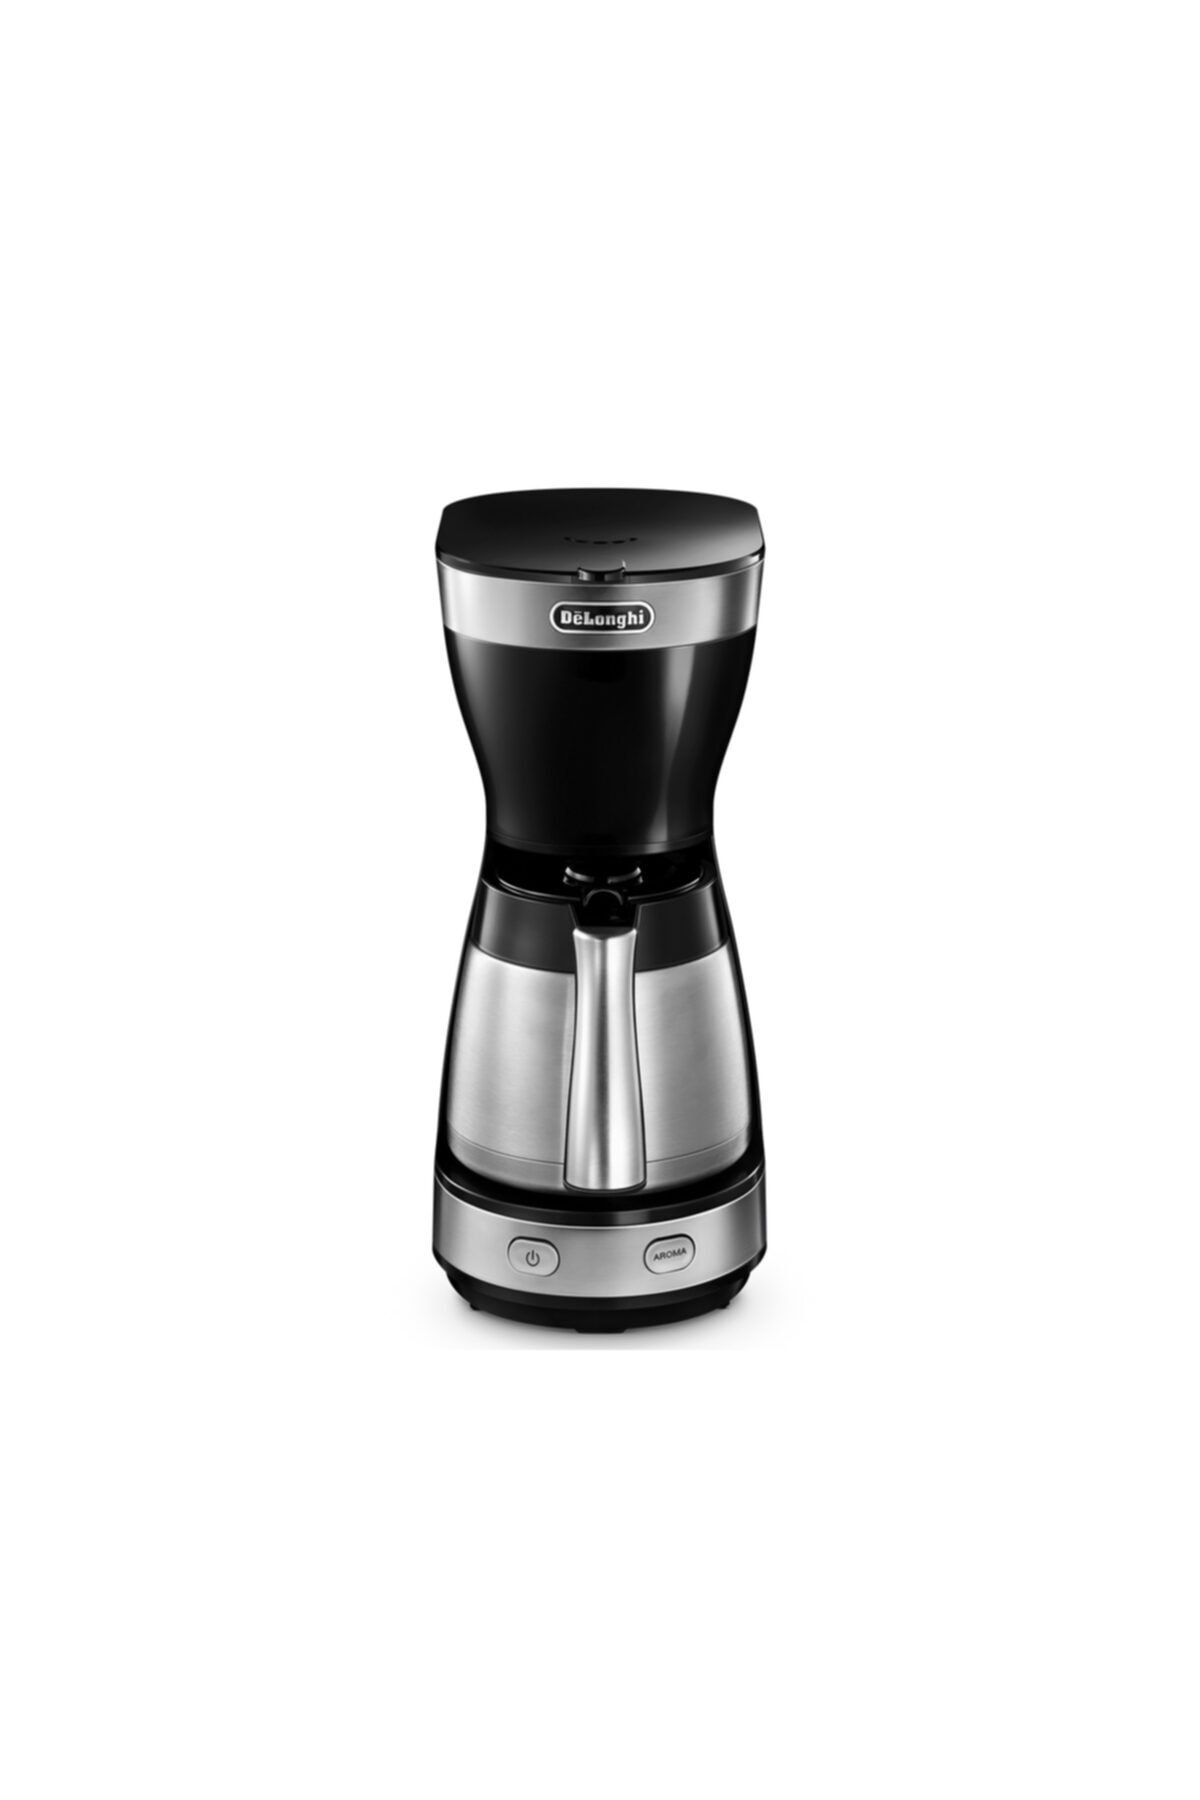 Delonghi Icm16710 Filtre Kahve Makinesi